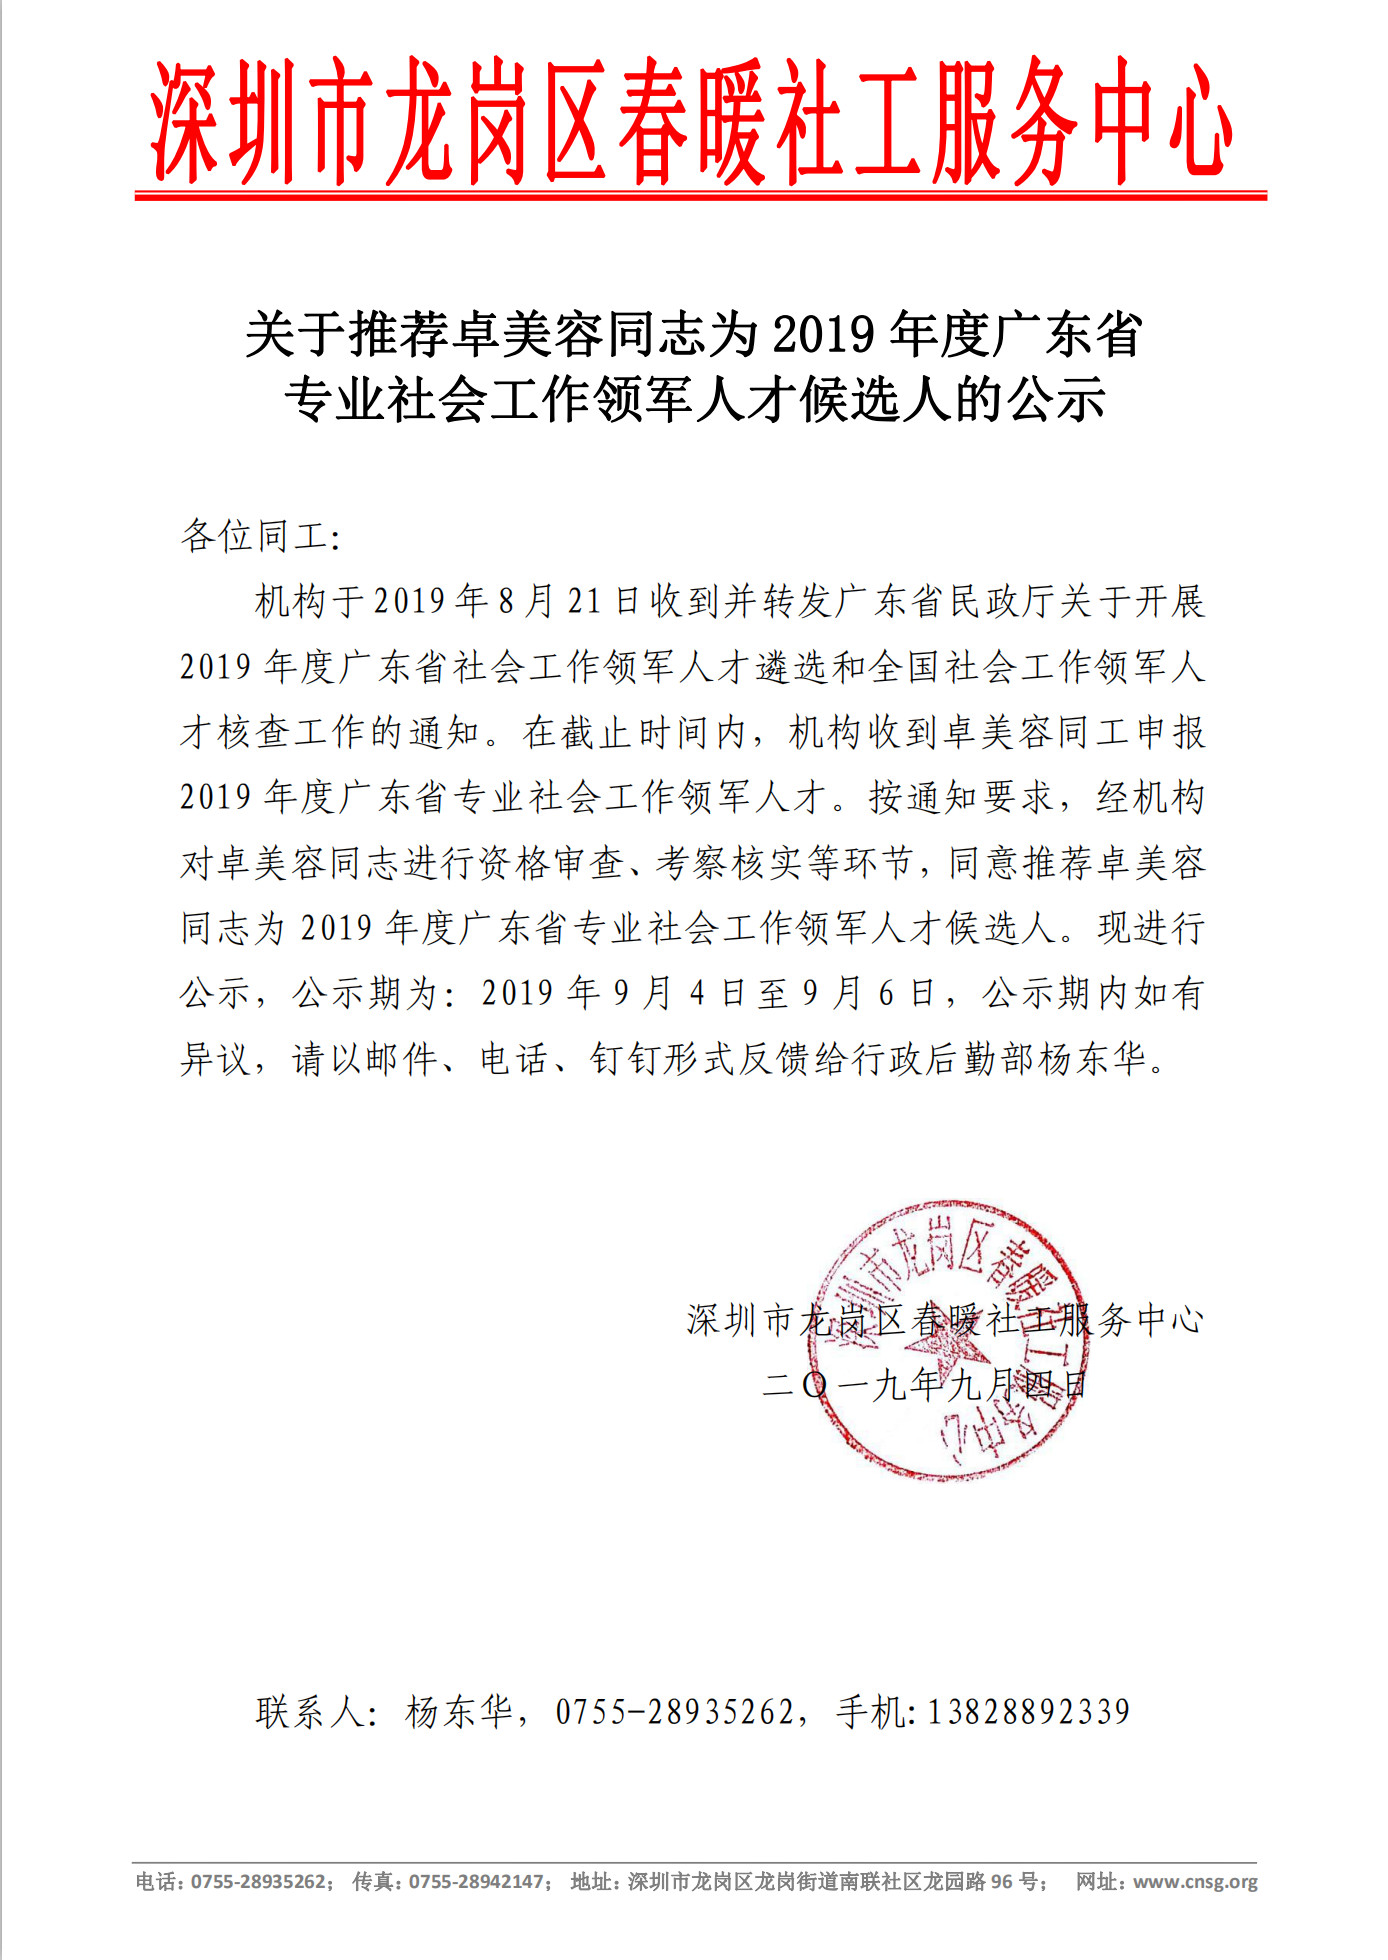 关于推荐卓美容同志为2019年度广东省专业社会工作领军人才候选人的公示